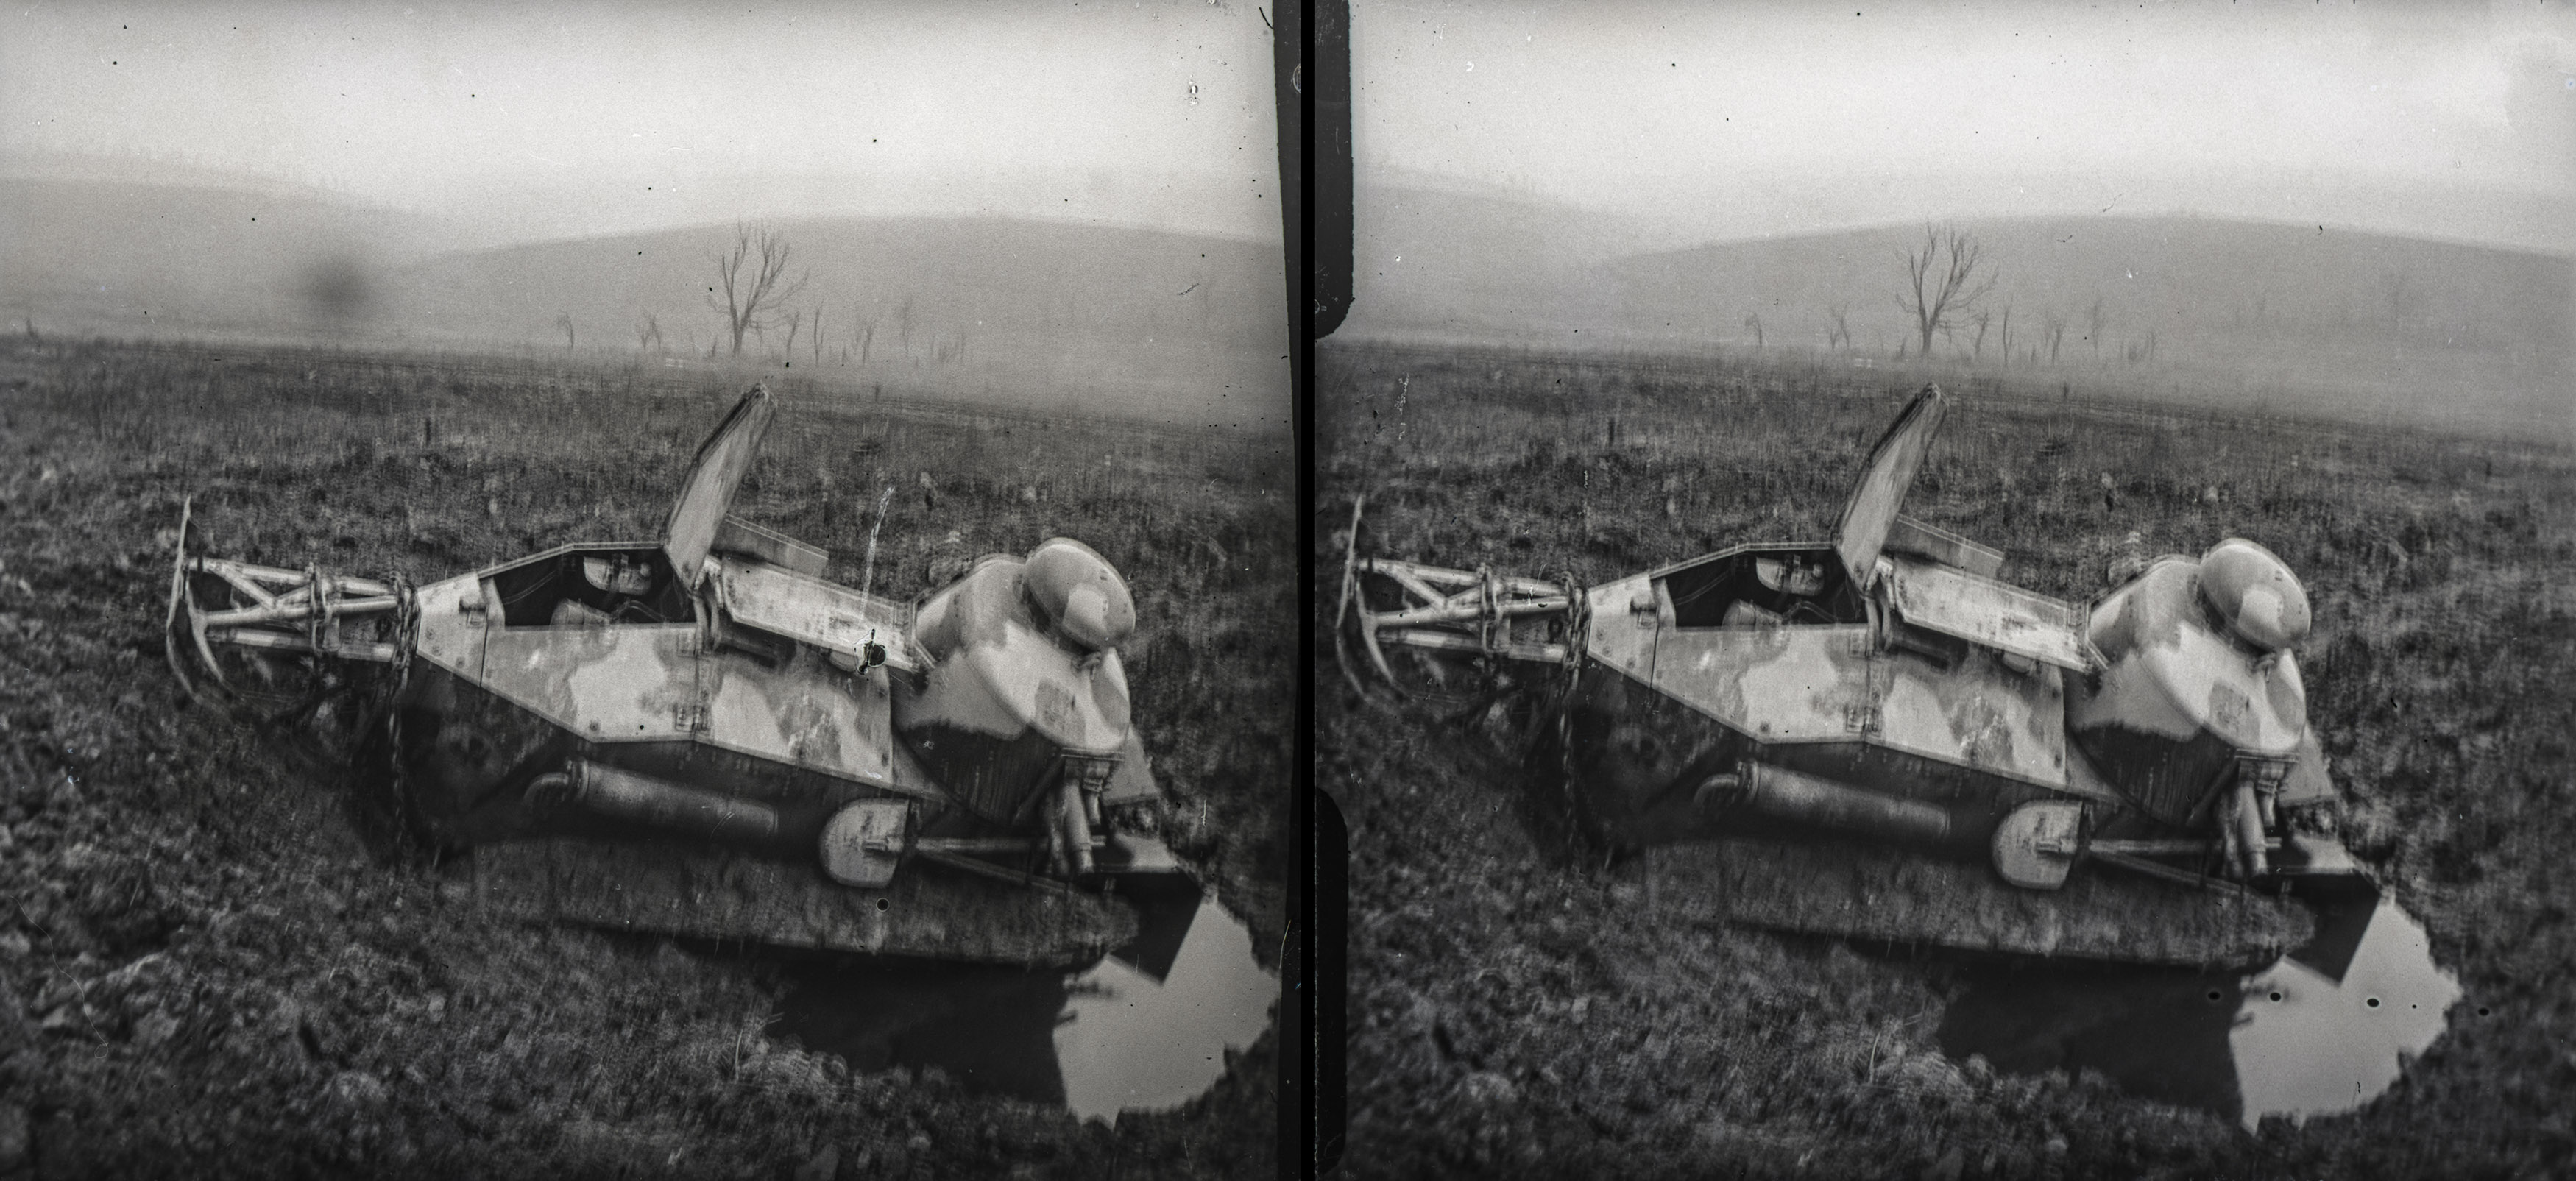 Bois d'Haumont, tank enlisé pendant l'attaque du bois - Bois d'Haumont, tank bogged down during the attack on the wood